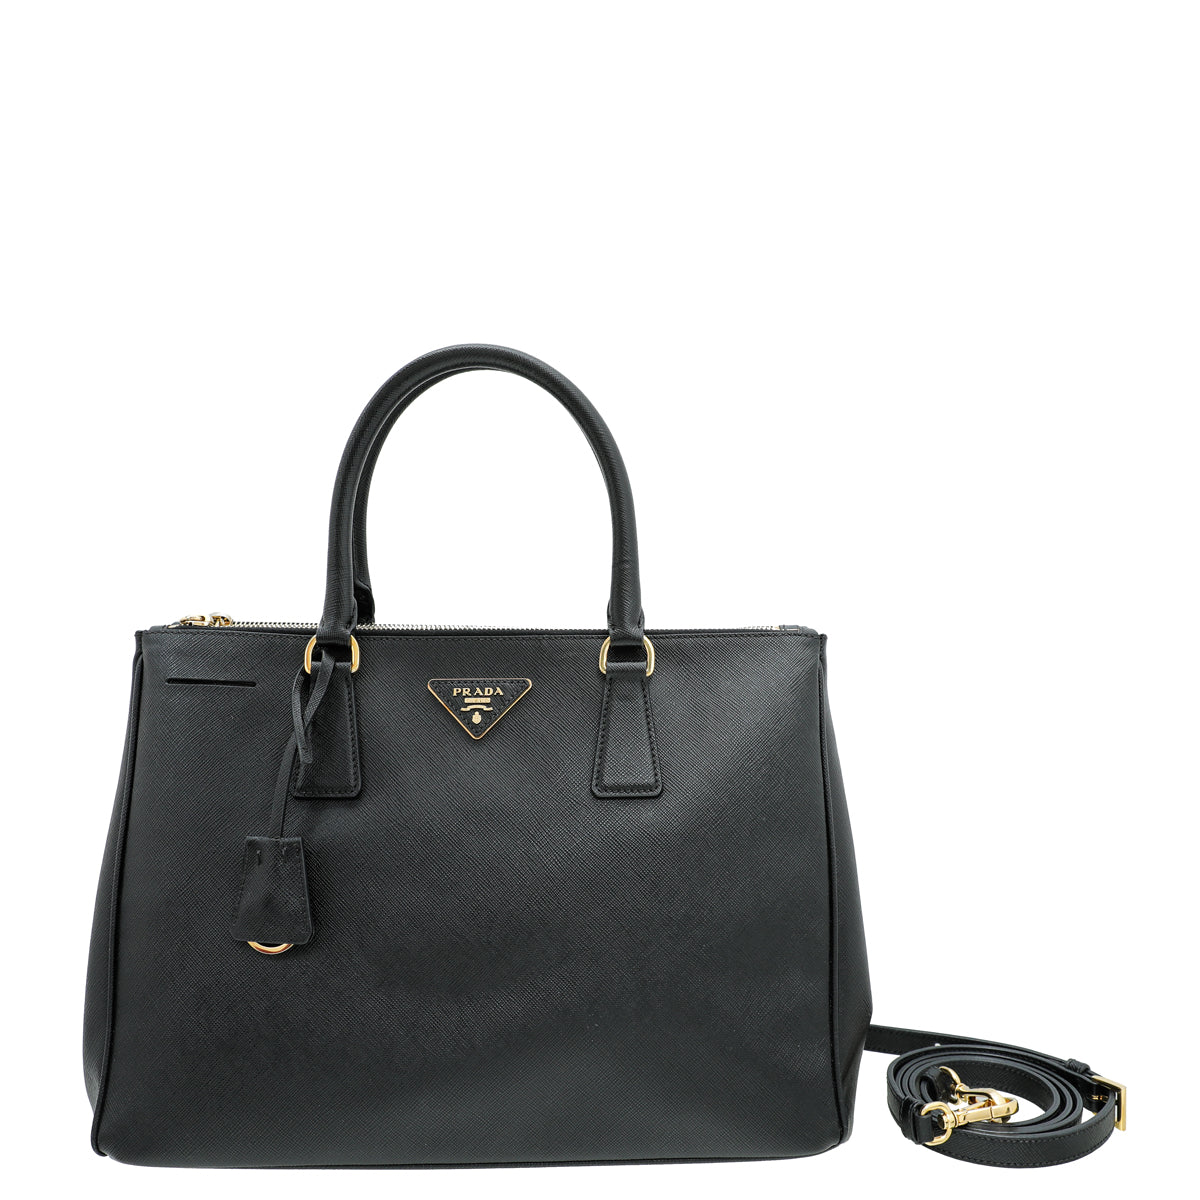 Prada Black Saffiano Leather Small Galleria Double Zip Tote Bag